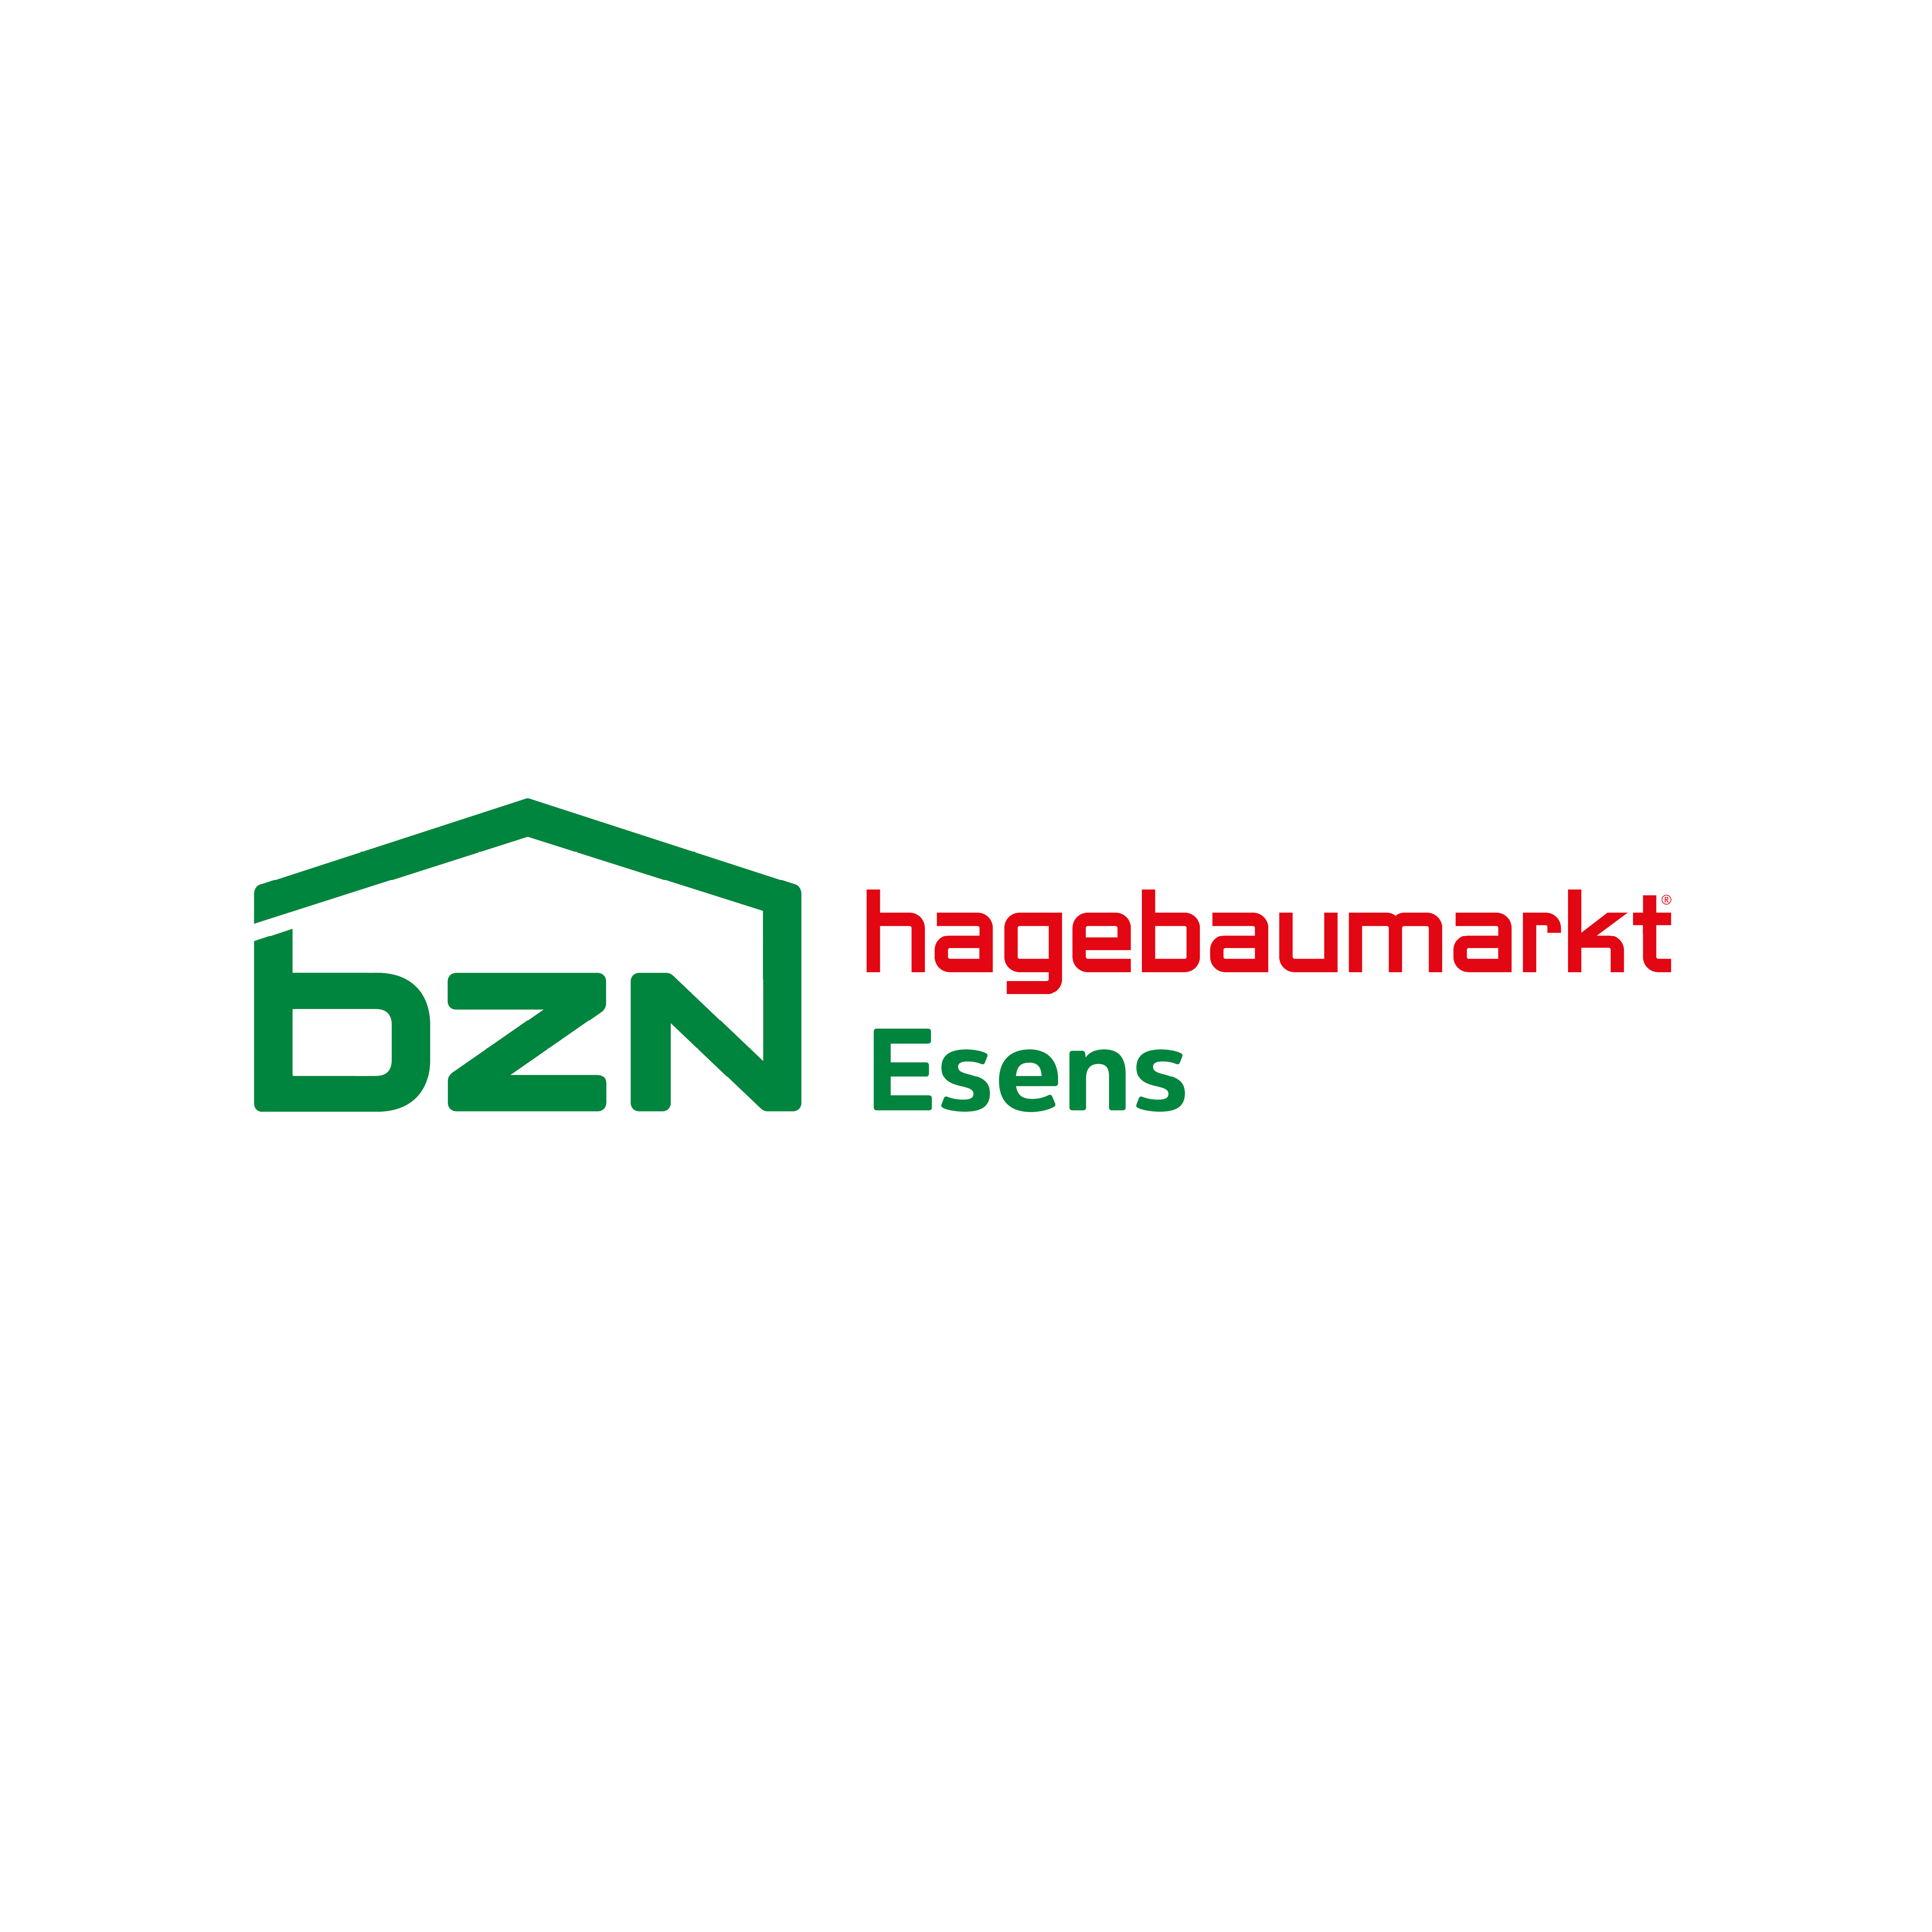 BZN Hagebaumarkt Esens GmbH & Co. KG